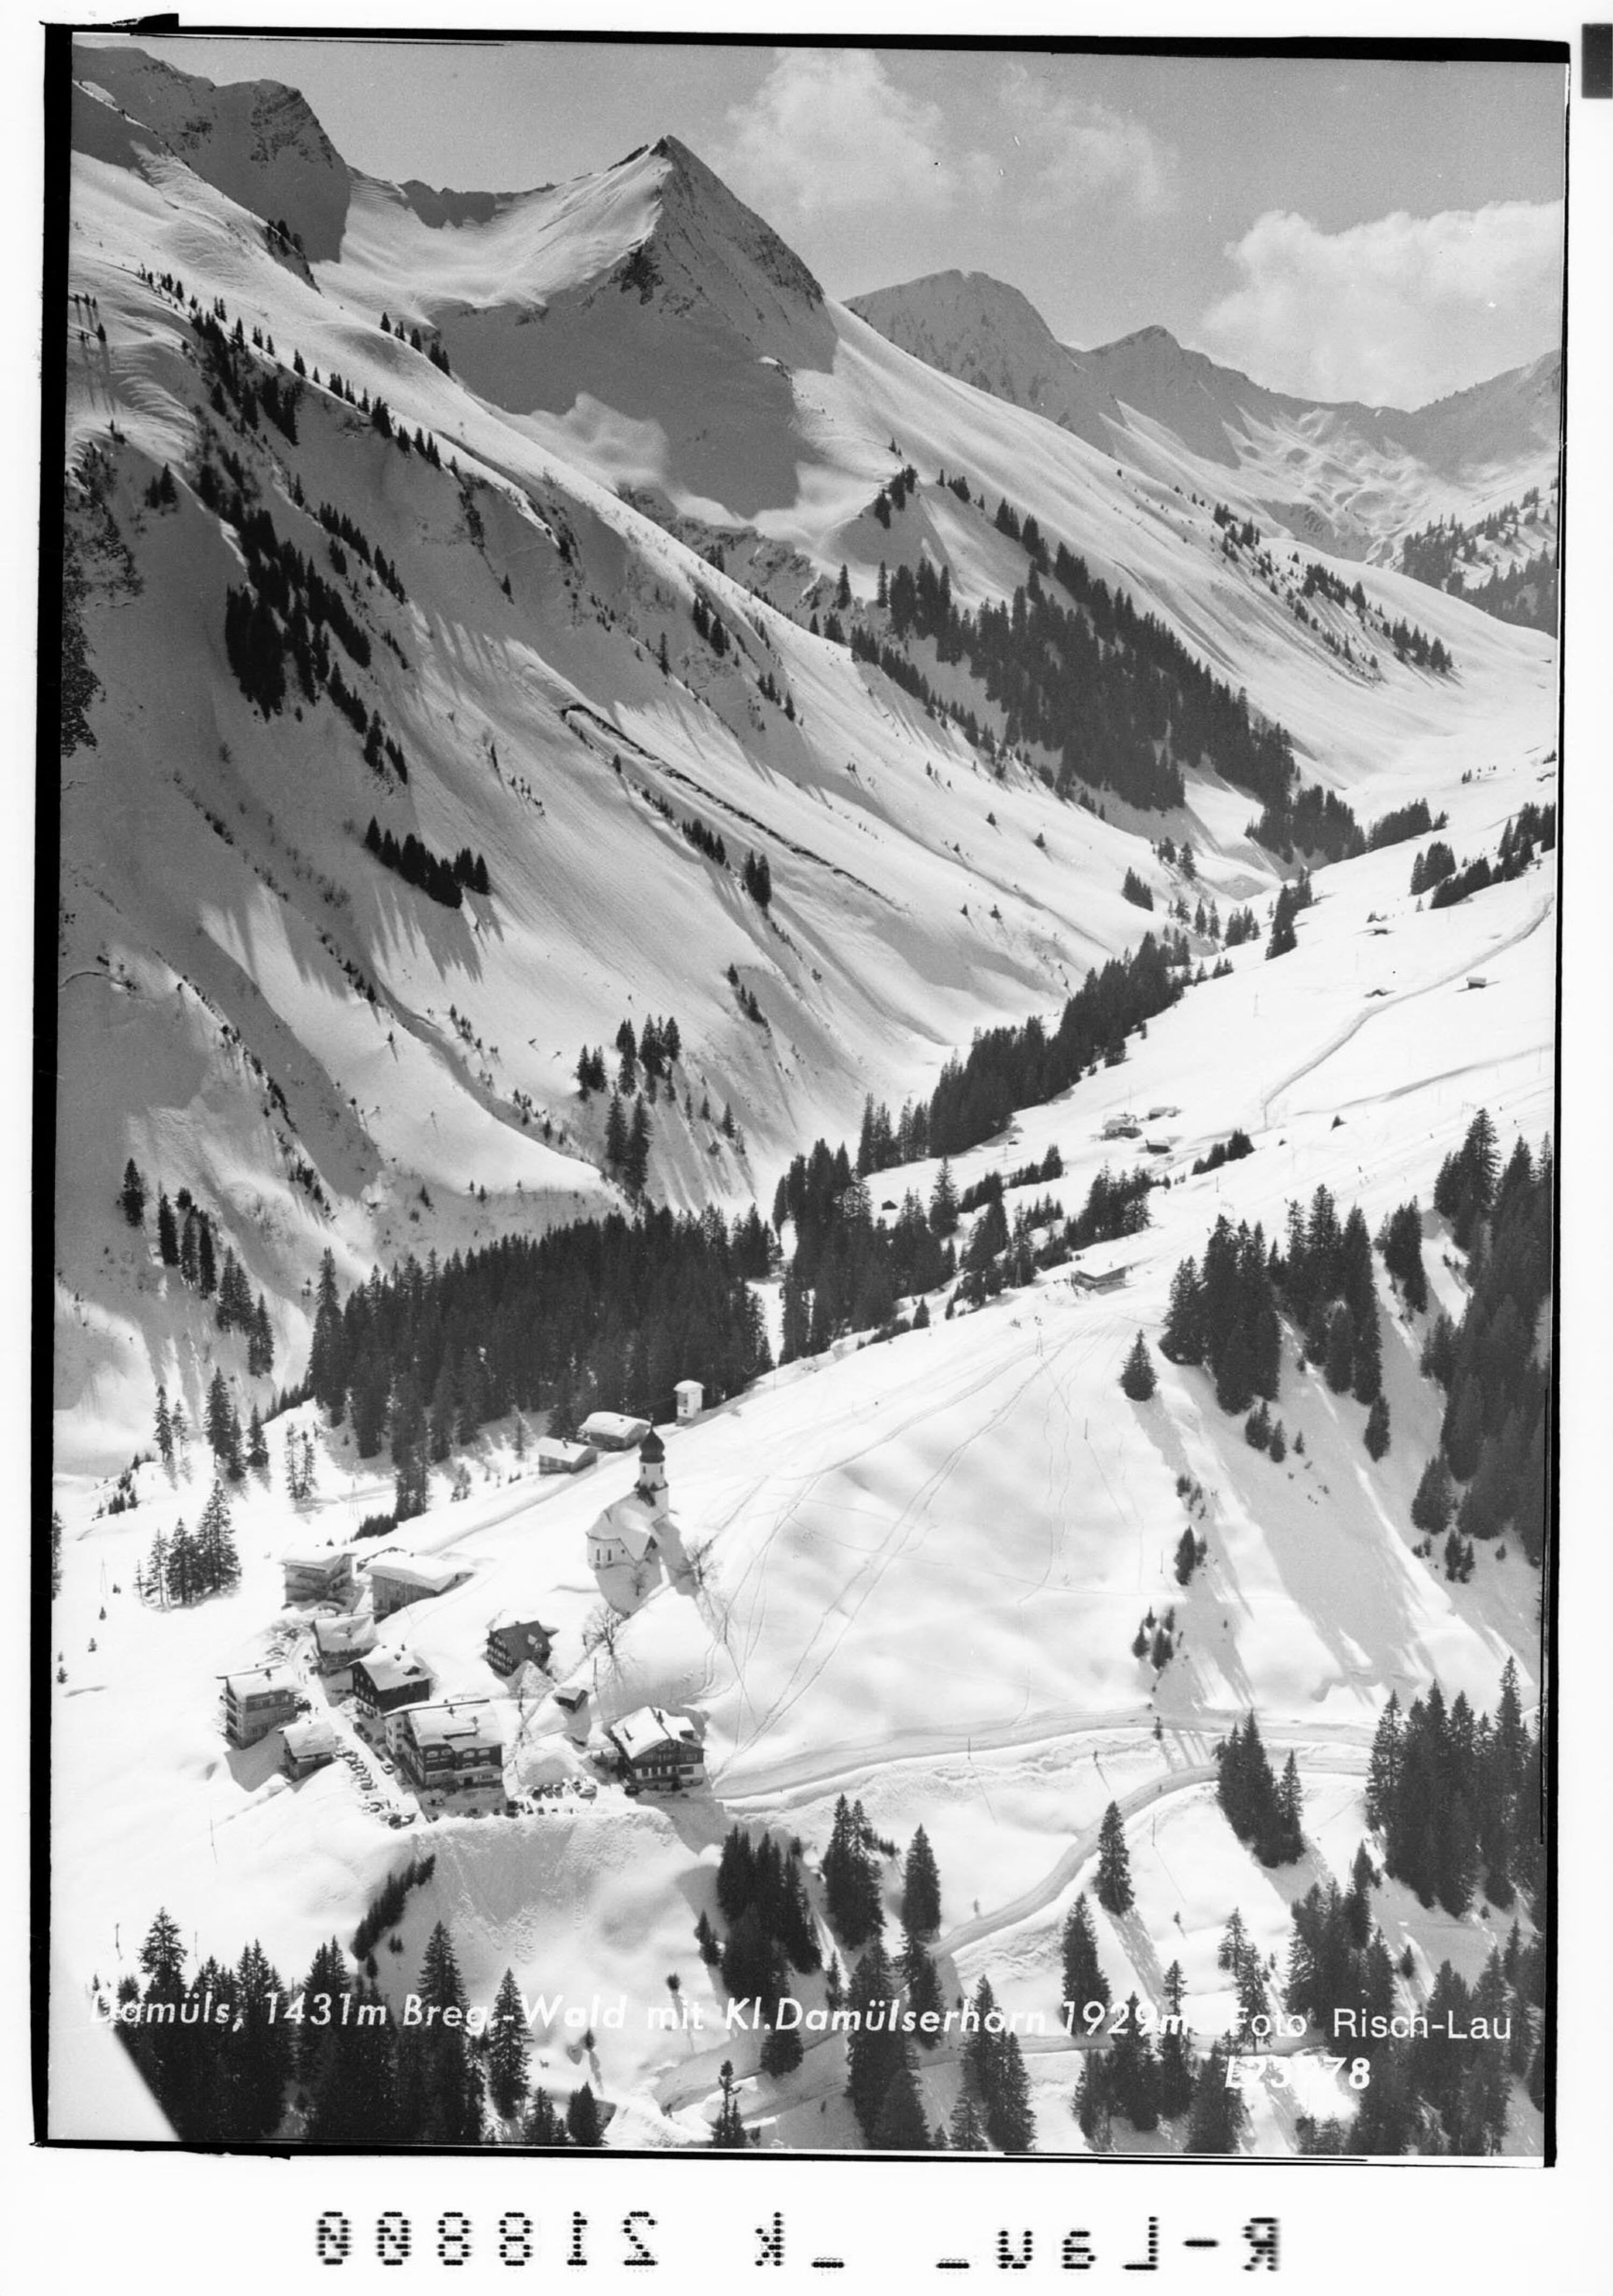 Damüls, 1431 m Bregenzerwald mit Kleinem Damülserhorn 1929 m></div>


    <hr>
    <div class=